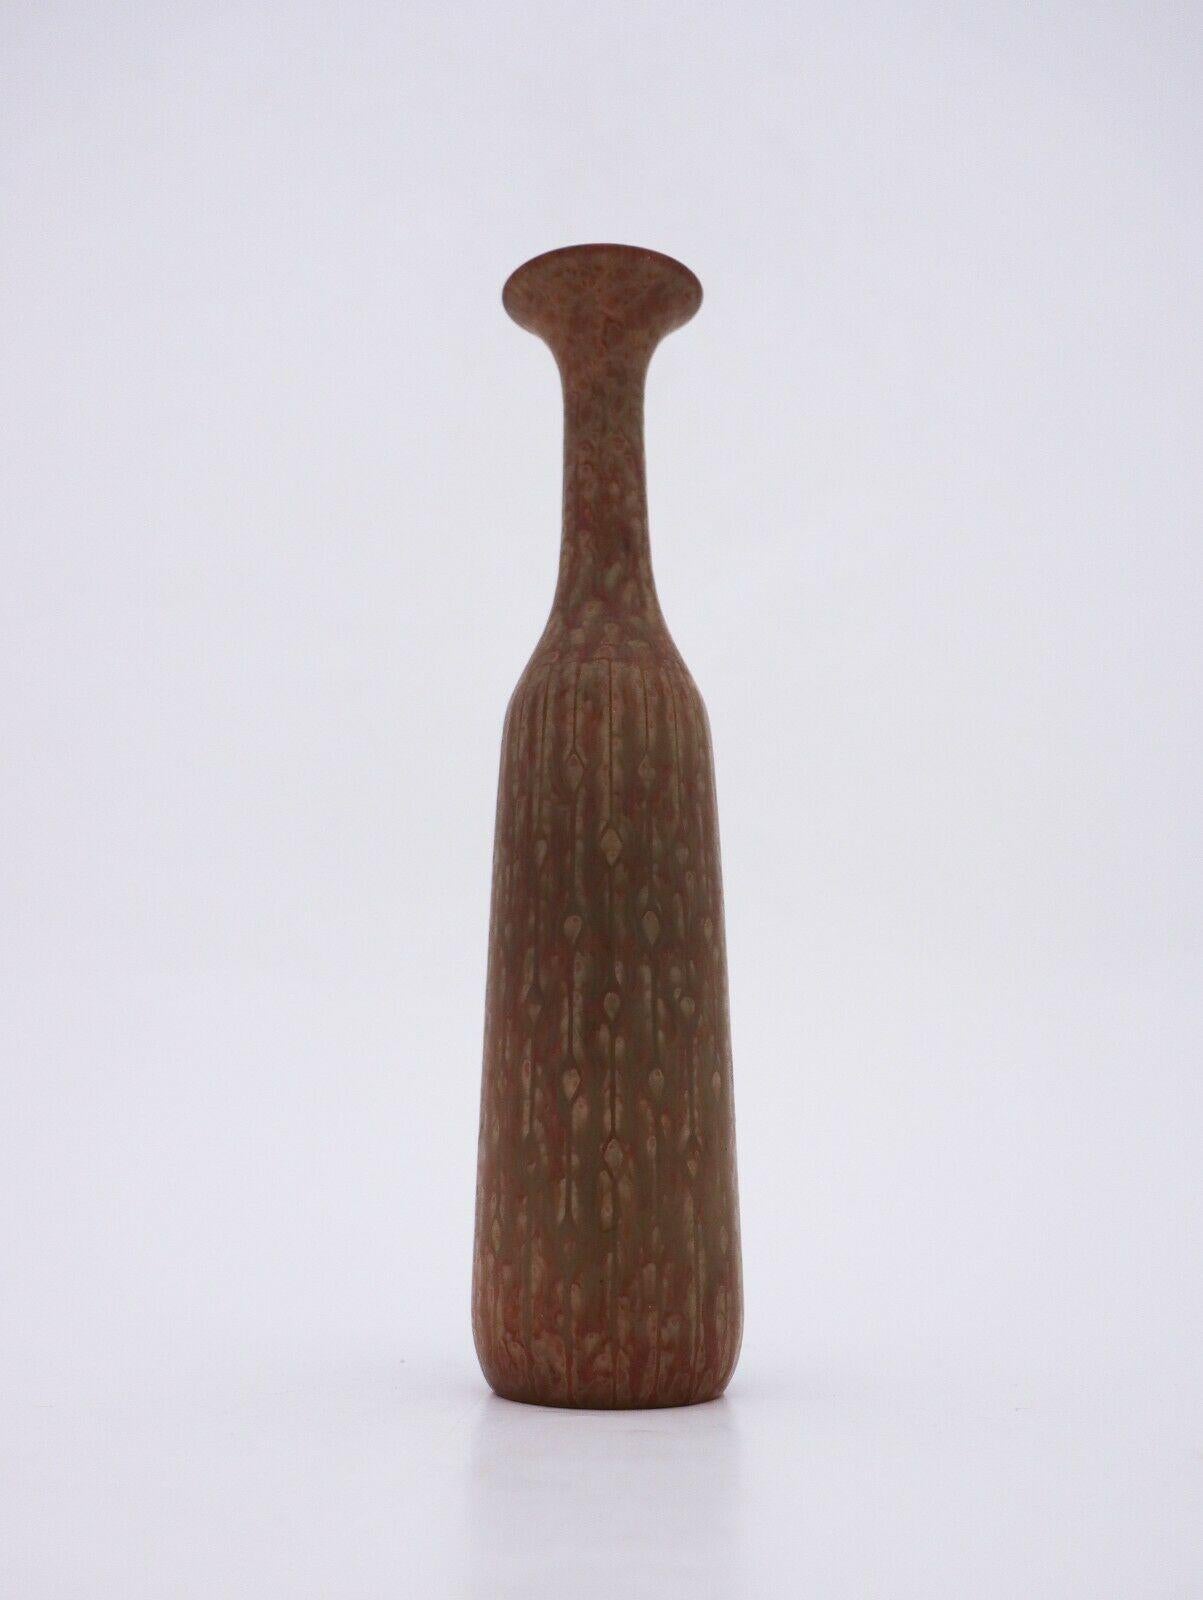 Eine Vase mit einer schönen gesprenkelten Glasur, entworfen von Gunnar Nylund in Rrstrand. Er ist 25,5 cm hoch und in sehr gutem Zustand, außer einigen kleinen Flecken in der Glasur, warum er als zweite Qualität gekennzeichnet ist. 

 